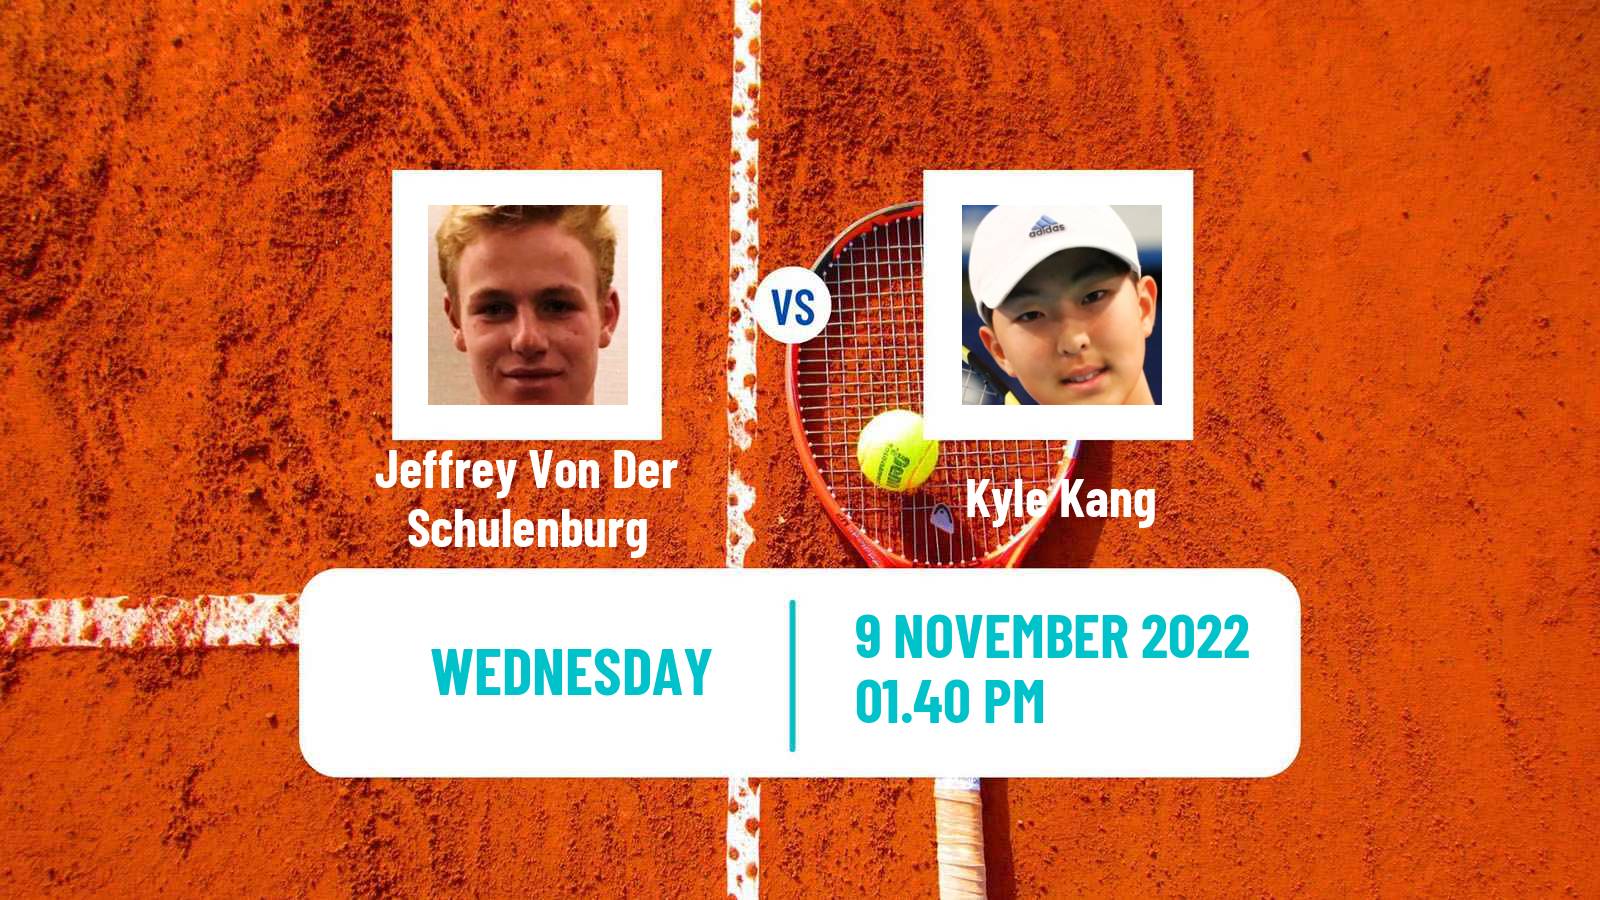 Tennis ITF Tournaments Jeffrey Von Der Schulenburg - Kyle Kang